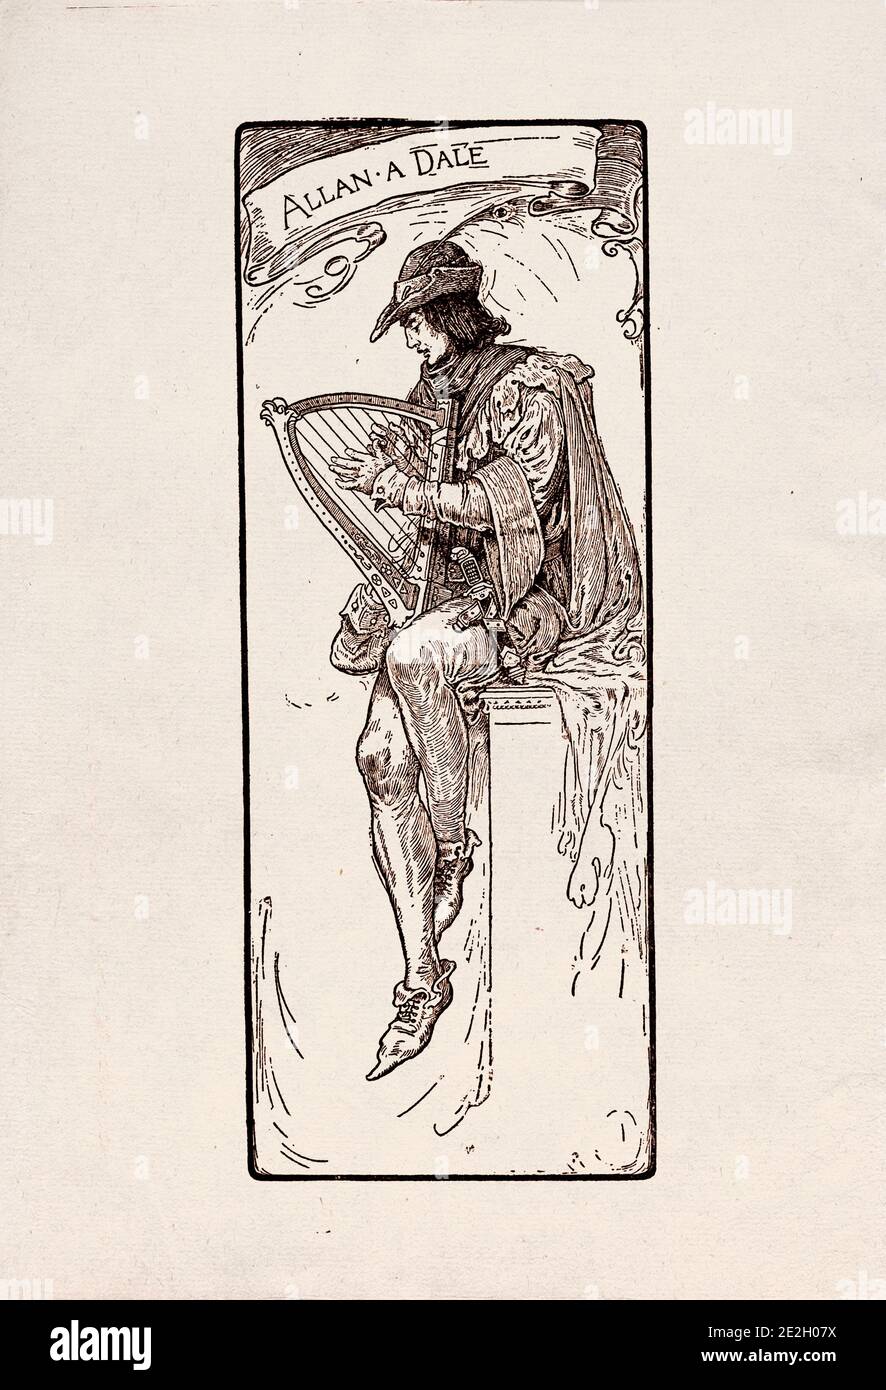 Gravure antique de personnages littéraires du folklore anglais des légendes Robin des Bois. Allan-a-Dale. Par Louis Rhead. 1912 Banque D'Images